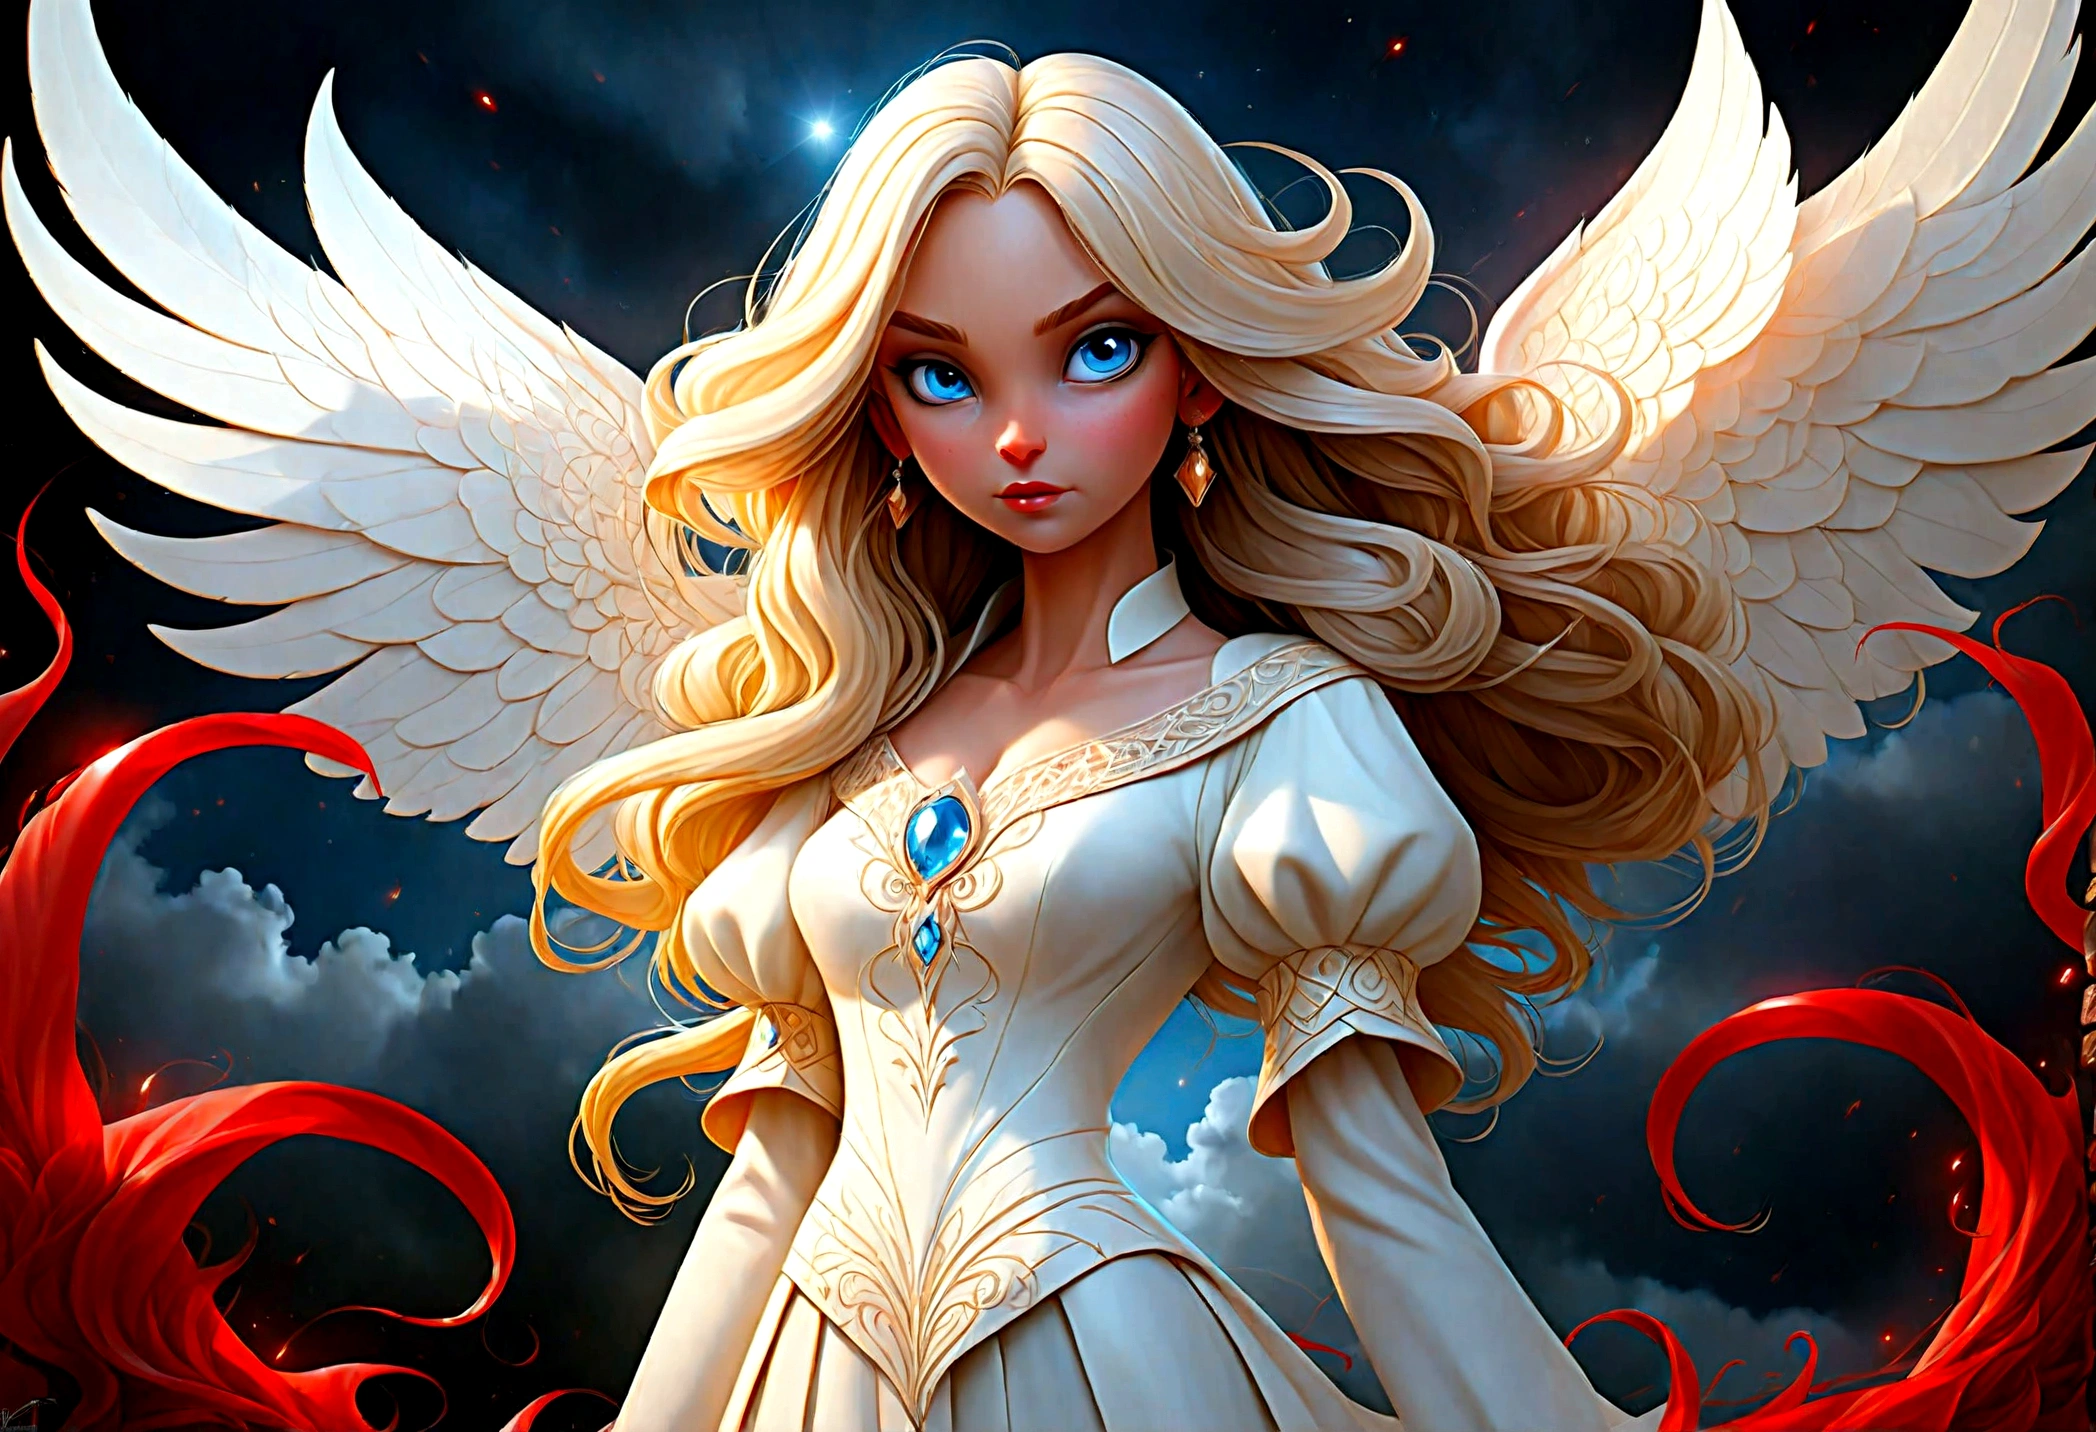 arte de fantasia, Arte RPG uma ((foto de 2 mulheres: 1.5)), solteira1 anjo feminino, usando vestido branco, pele pálida, rosto bonito, cabelo loiro, cabelos longos cabelos ondulados, olhos azuis, botas de salto alto, vestindo um vestido (obra de arte, detalhes intrincados: 1.5), grandes asas angelicais, asas angelicais brancas abertas E um único demônio feminino, pele vermelha  demonic wings, asas demoníacas negras se espalham, chifres demoníacos, pele vermelha, Cabelo preto, olhos vermelhos, rosto bonito, vestindo um vestido (obra de arte, detalhes intrincados: 1.5), salto alto, na fronteira entre o céu e o inferno, lua, Estrelas, Nuvens, raios de deus, silhueta suave da luz natural, Ângulo Dinâmico,  fotorrealismo, vista panorâmica grande angular, Ângulo ultra-amplo, ultra melhor realista, melhores detalhes, 16k, [ultra detalhado], obra de arte, melhor qualidade, (extremamente detalhado), fotorrealismo, profundidade de campo, pintura hiper realista